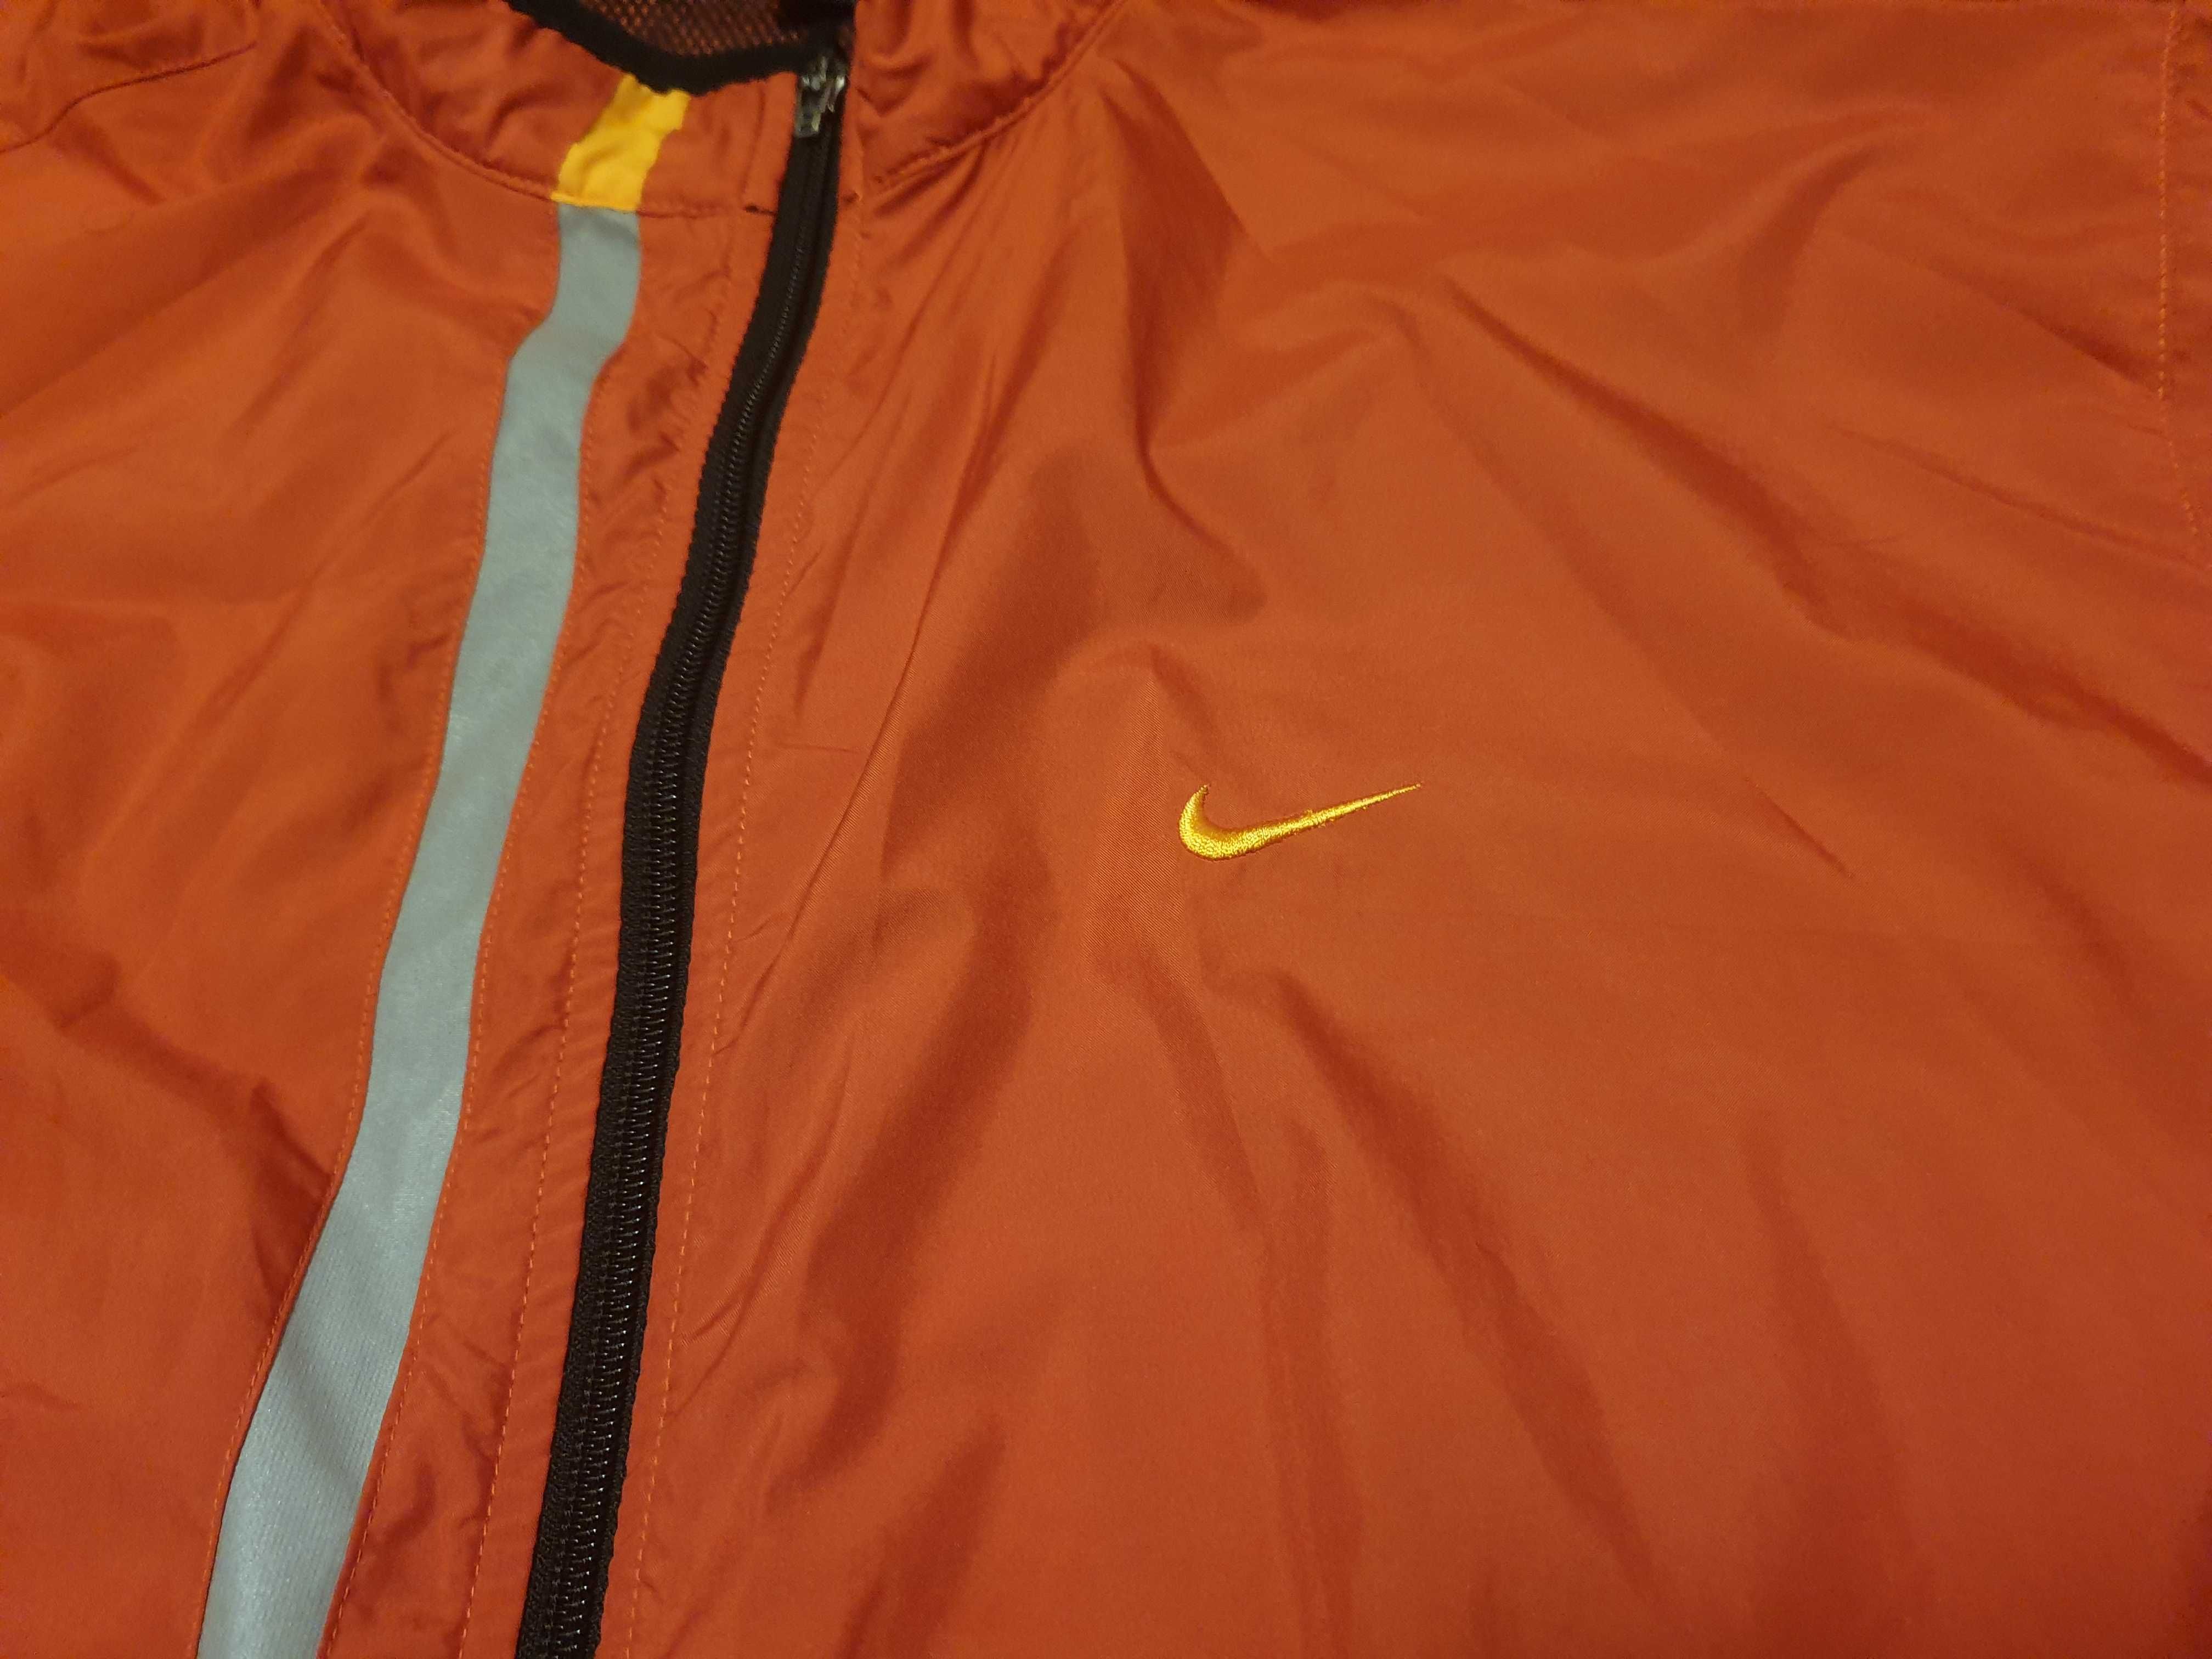 Foiță Nike portocalie